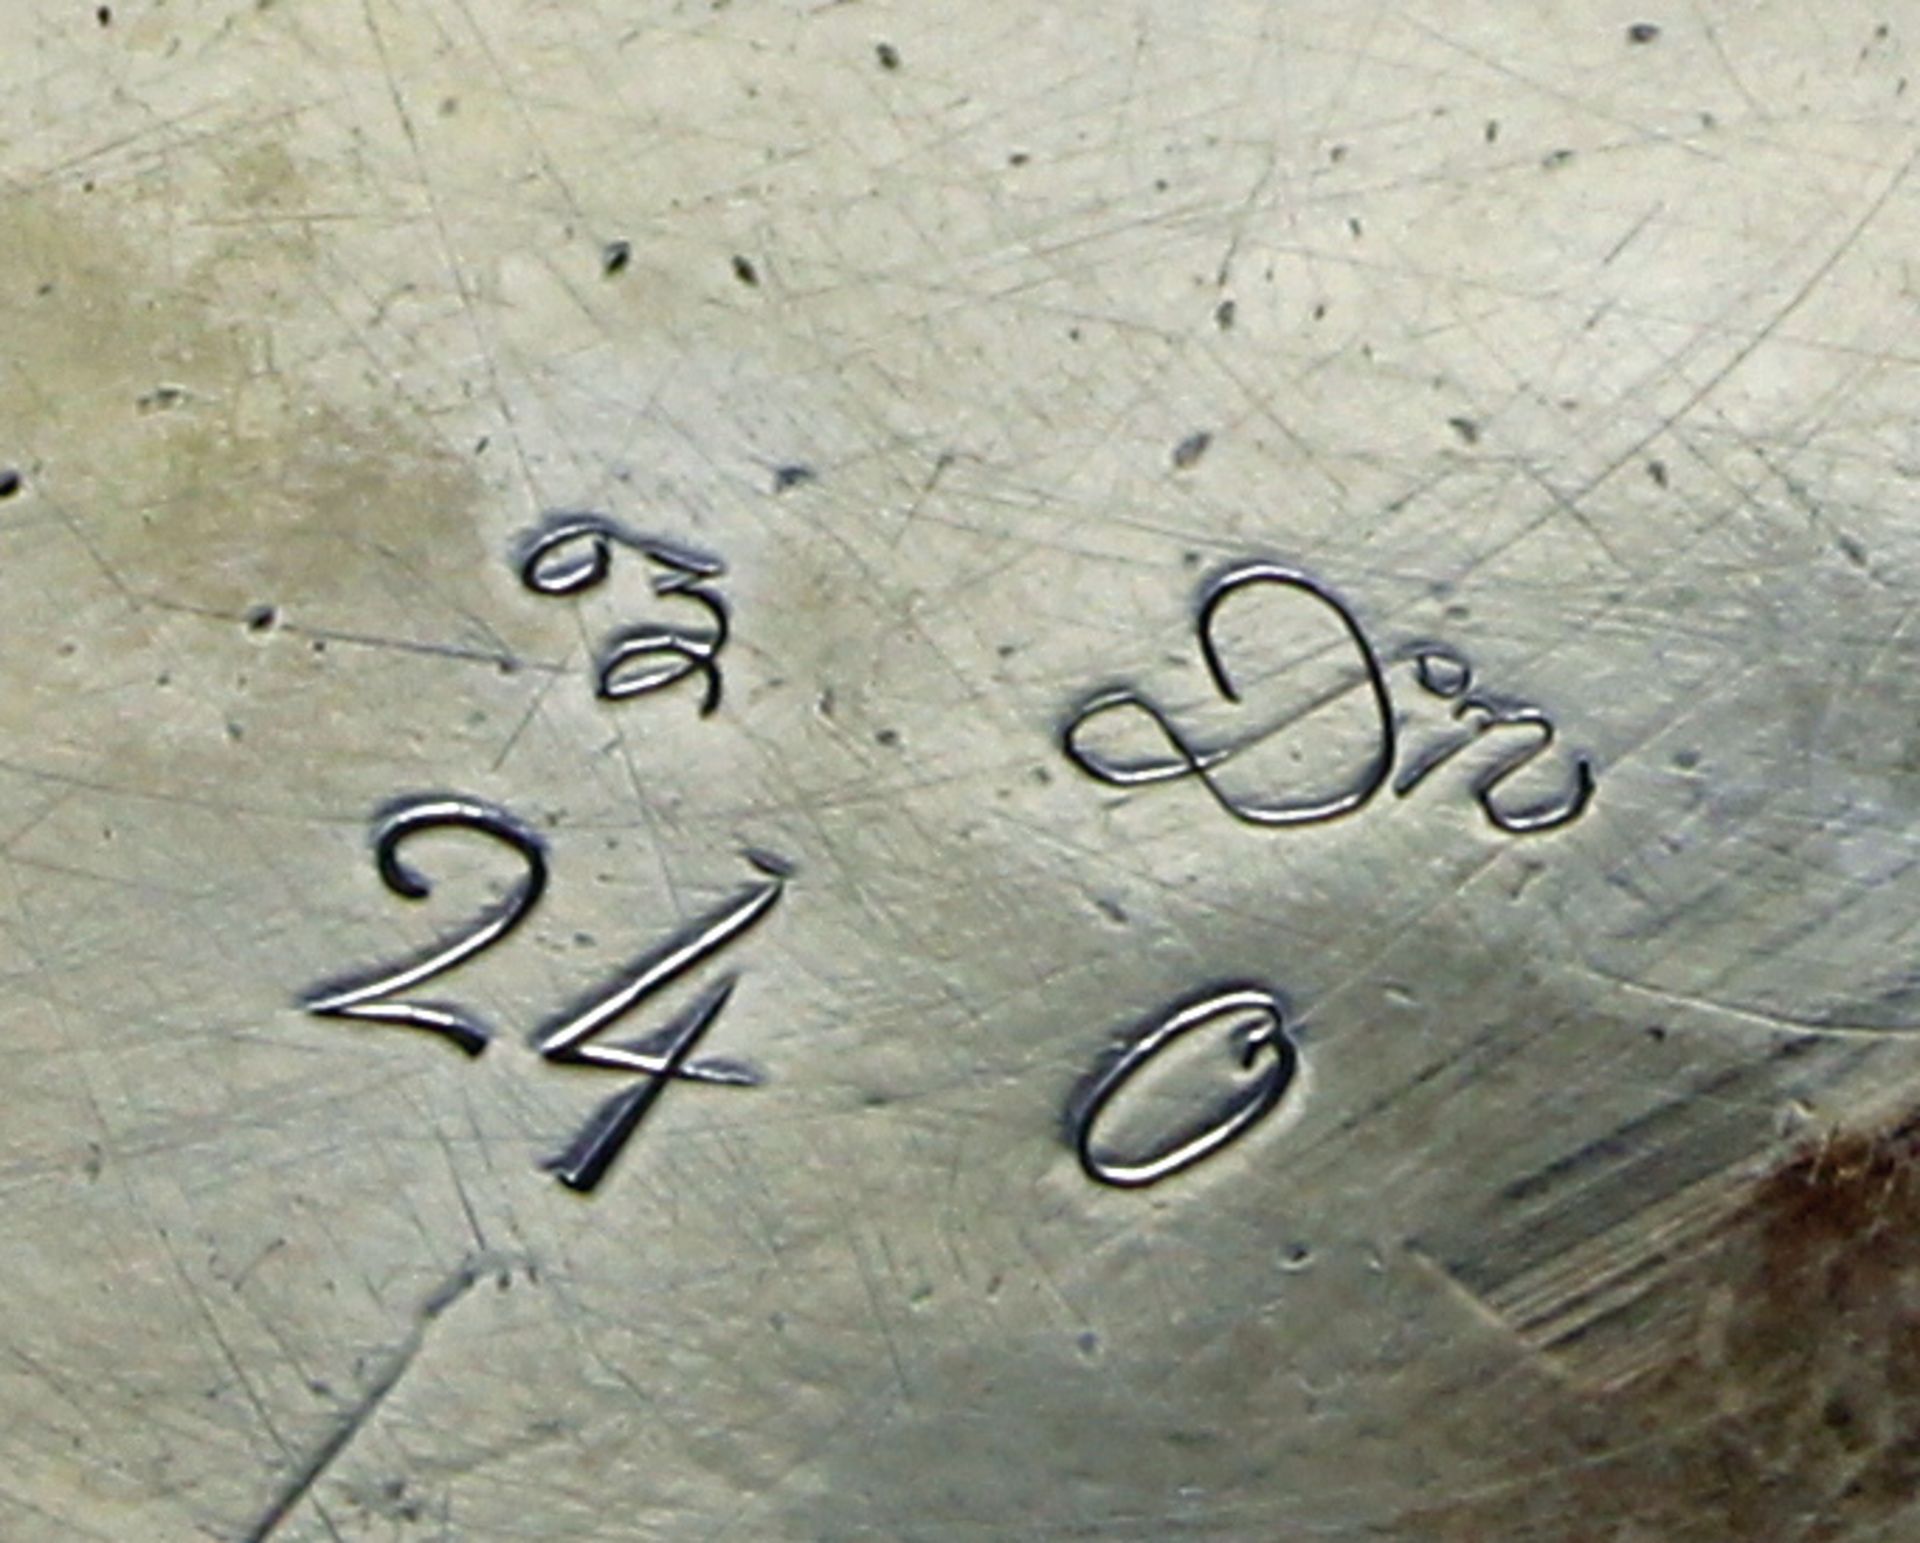 Salver, Silber 925, London, 1750, Meistermarke, Spiegel mit rocaillierter Zier und graviertem - Image 3 of 3